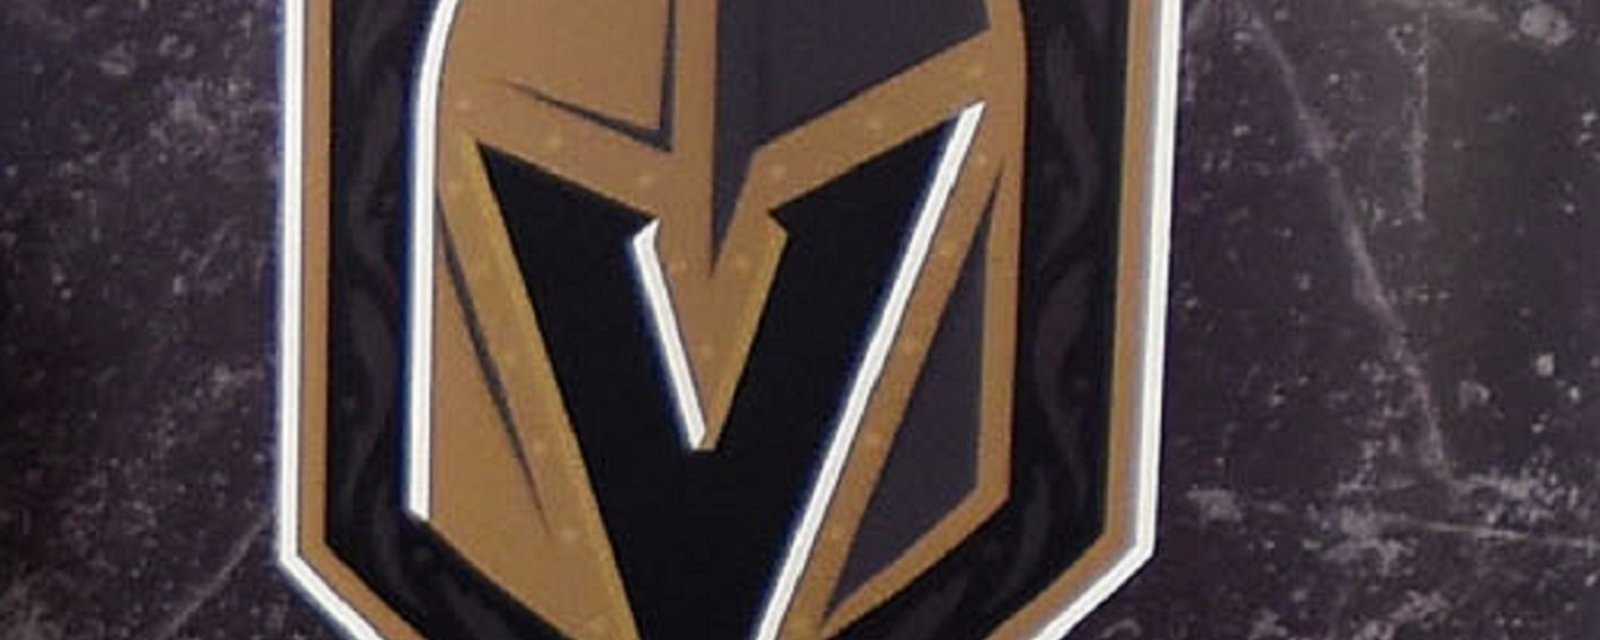 Un joueur élite de la KHL se joint aux Golden Knights de Las Vegas